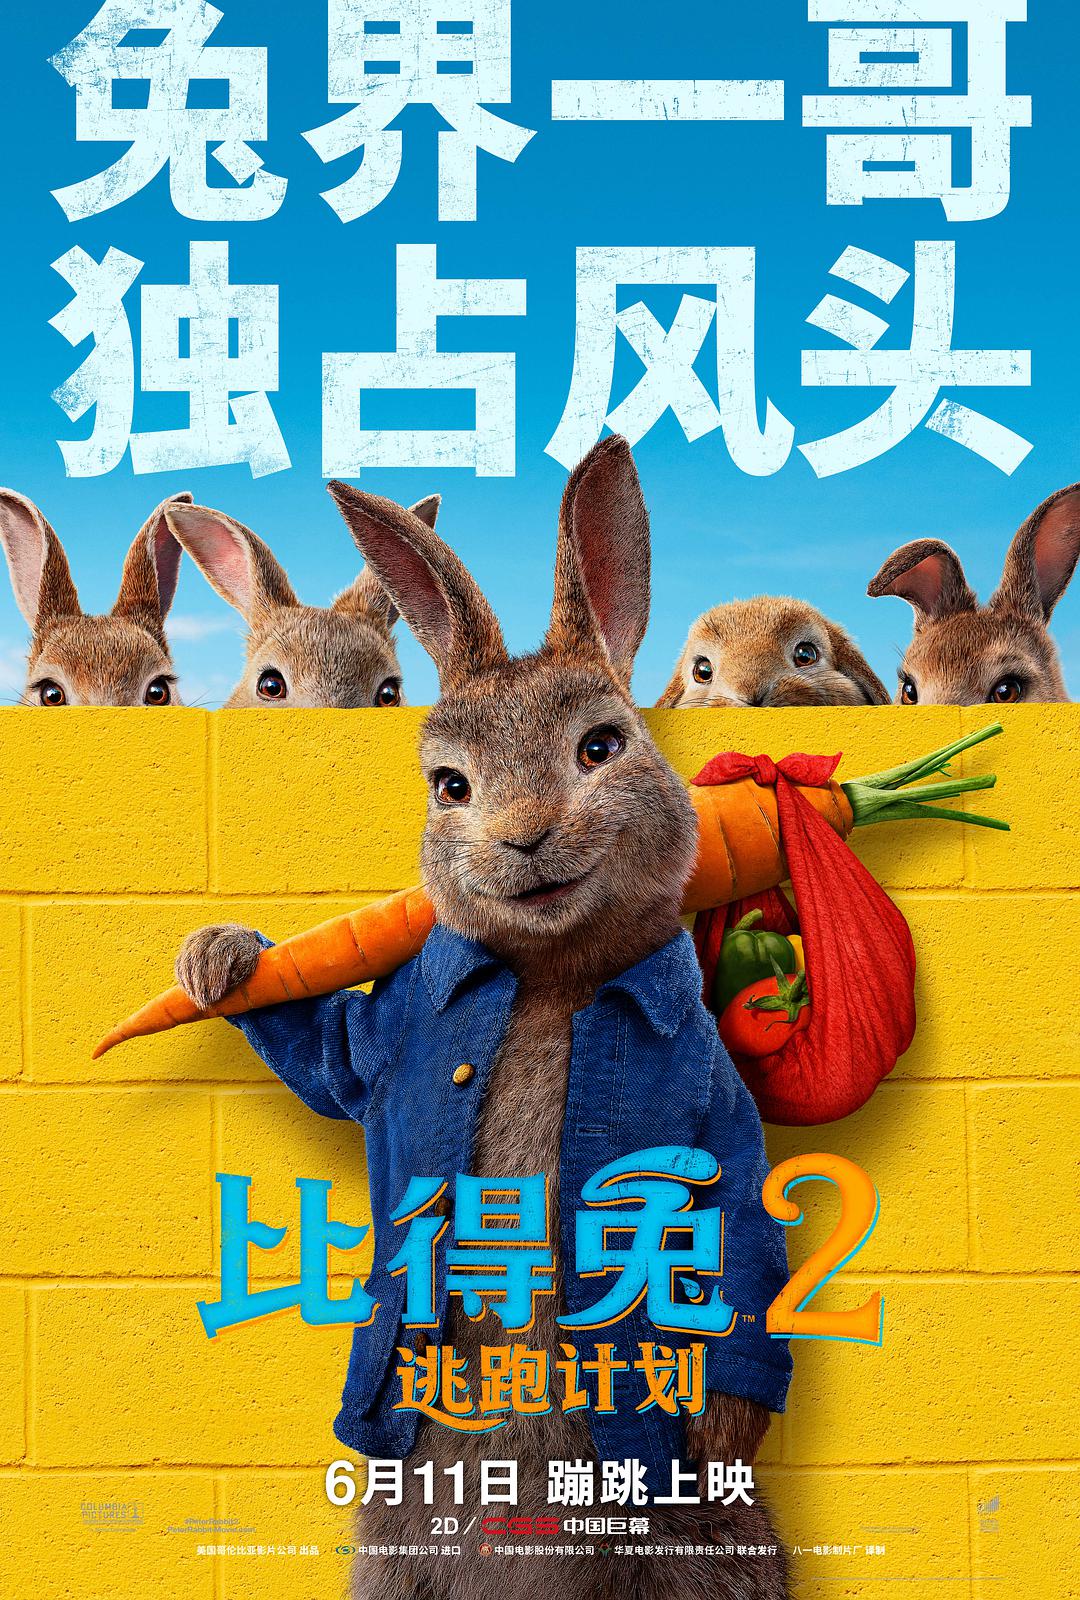 彼得兔，3D，2018年，电影，4K，海报预览 | 10wallpaper.com